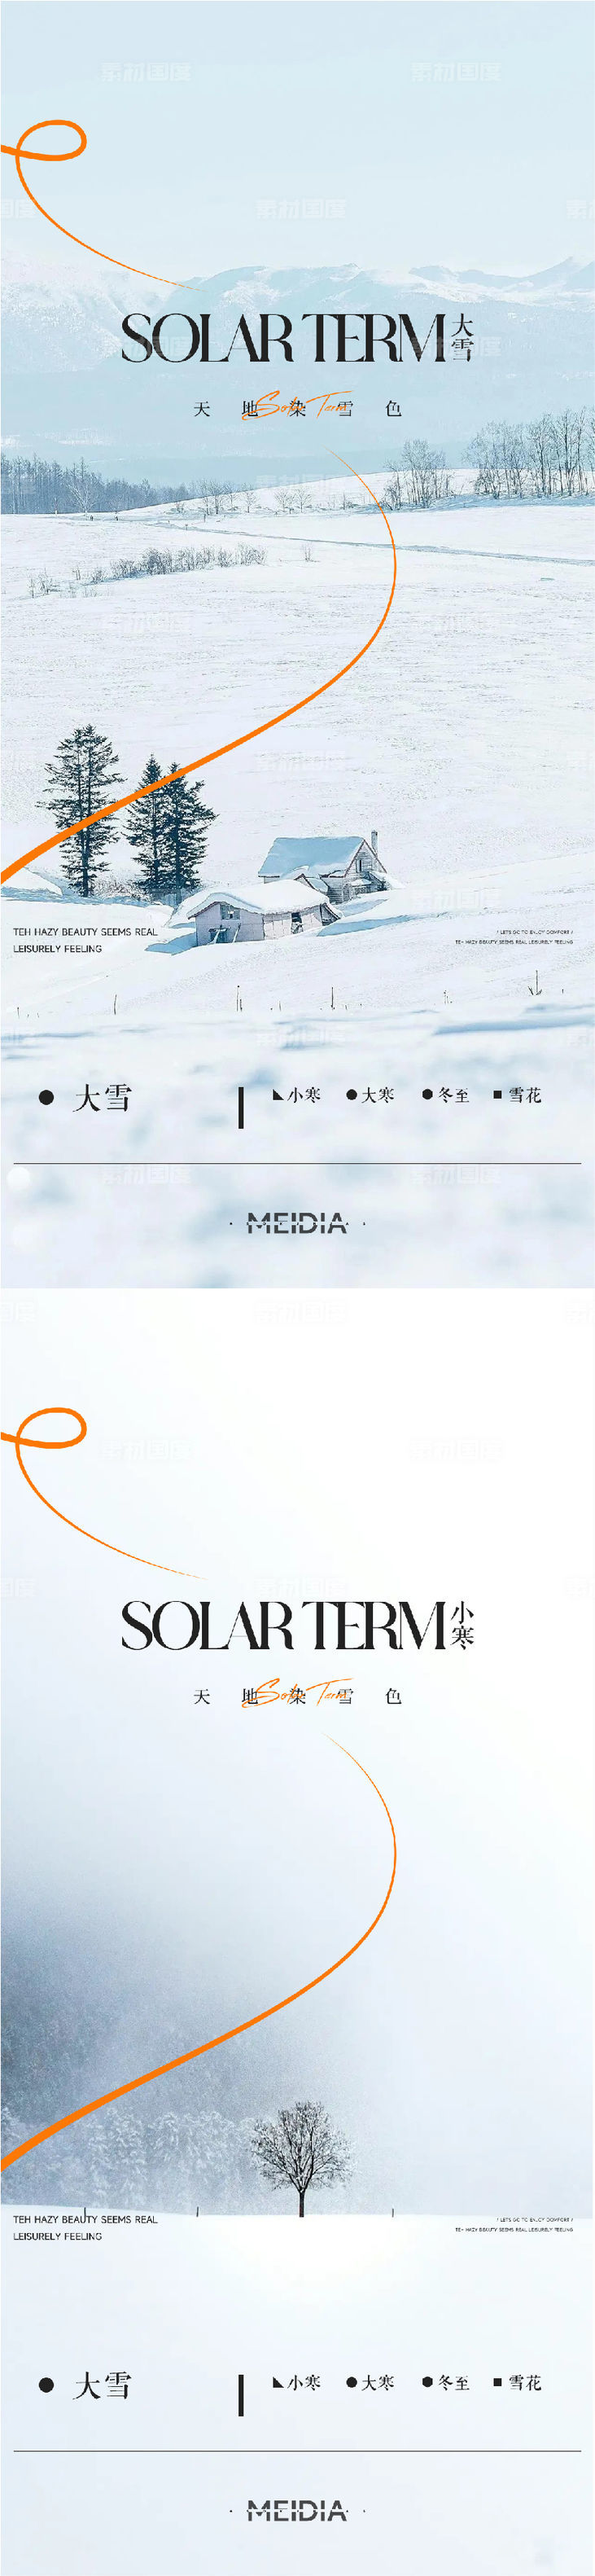 地产新中式大雪冬至小寒大寒海报系列